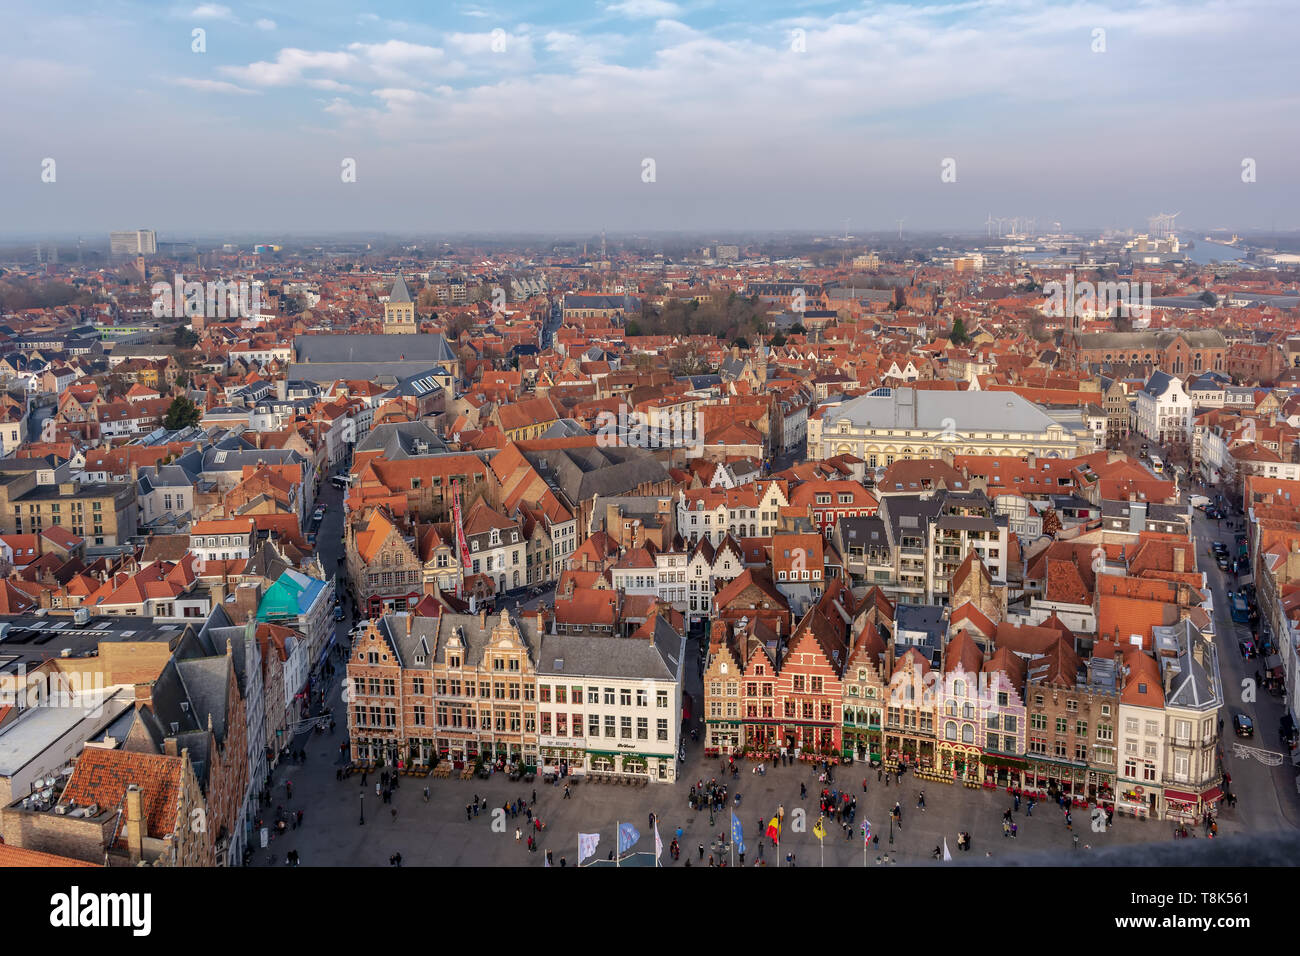 Ville fantastique avec des toits de tuiles rouges et une partie de la Place du Marché (Markt) en journée d'hiver ensoleillée. Vue de la ville médiévale de Bruges depuis le haut Banque D'Images